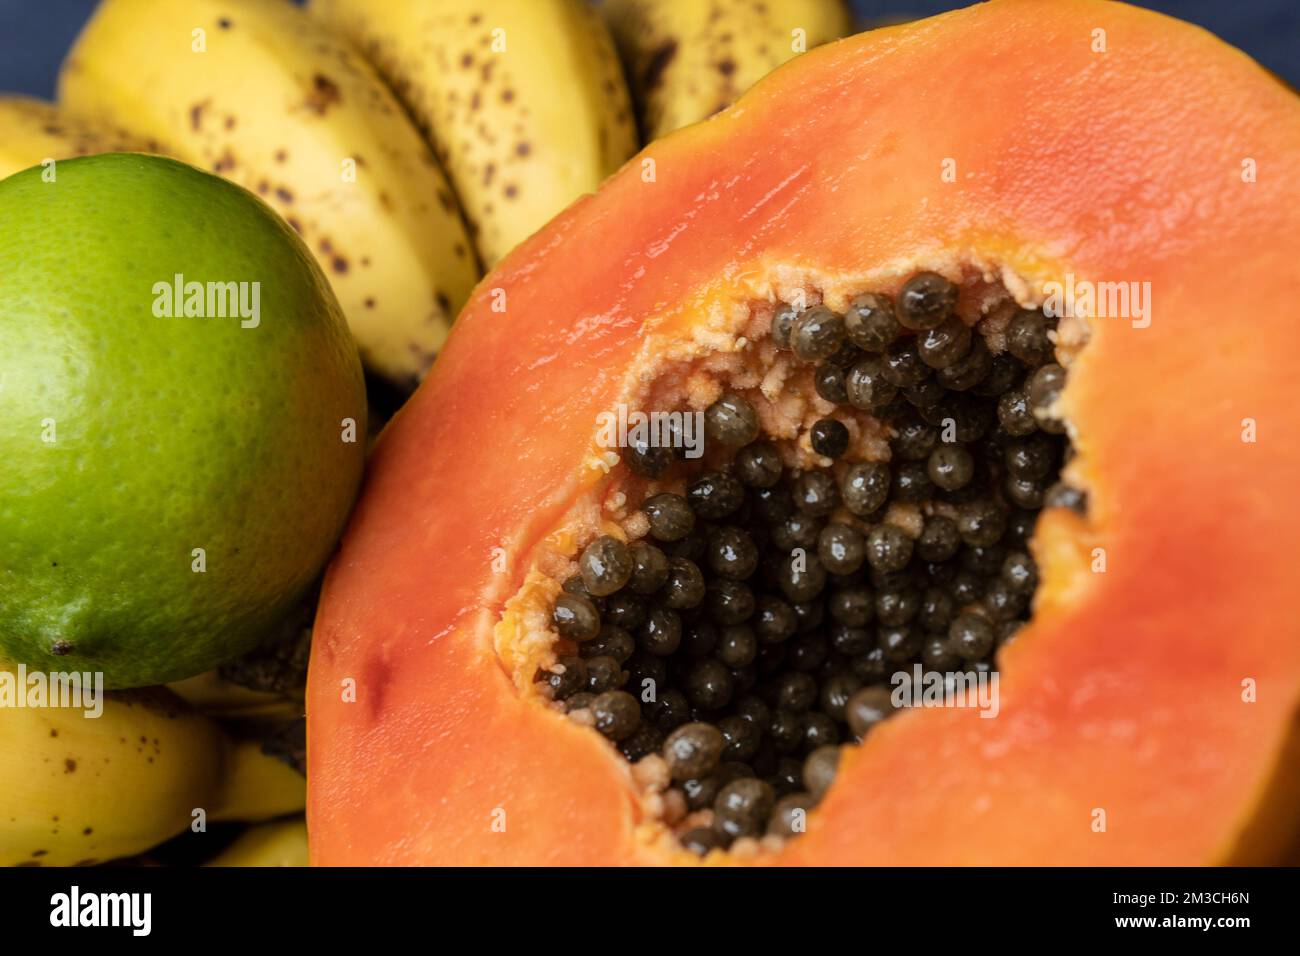 Aus nächster Nähe sehen Sie eine frisch geschnittene Orangenpapaya mit Samen im Inneren, Sommersprossen und Zitronen im Hintergrund. Obst- und Esskonzeptsfotografie Stockfoto